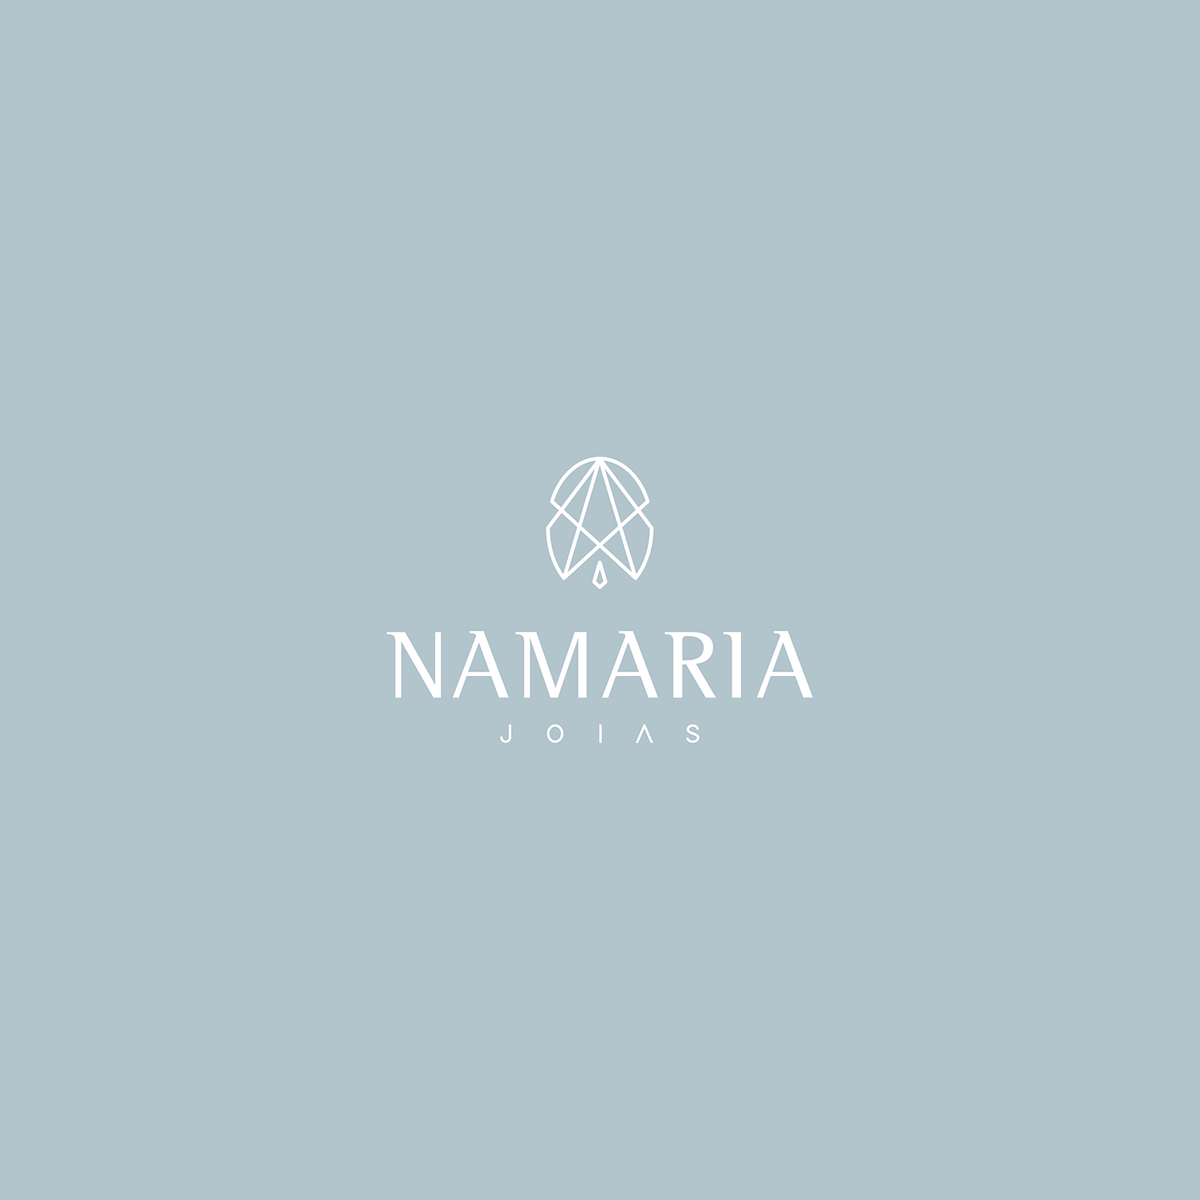 Namaria | Joias on Behance